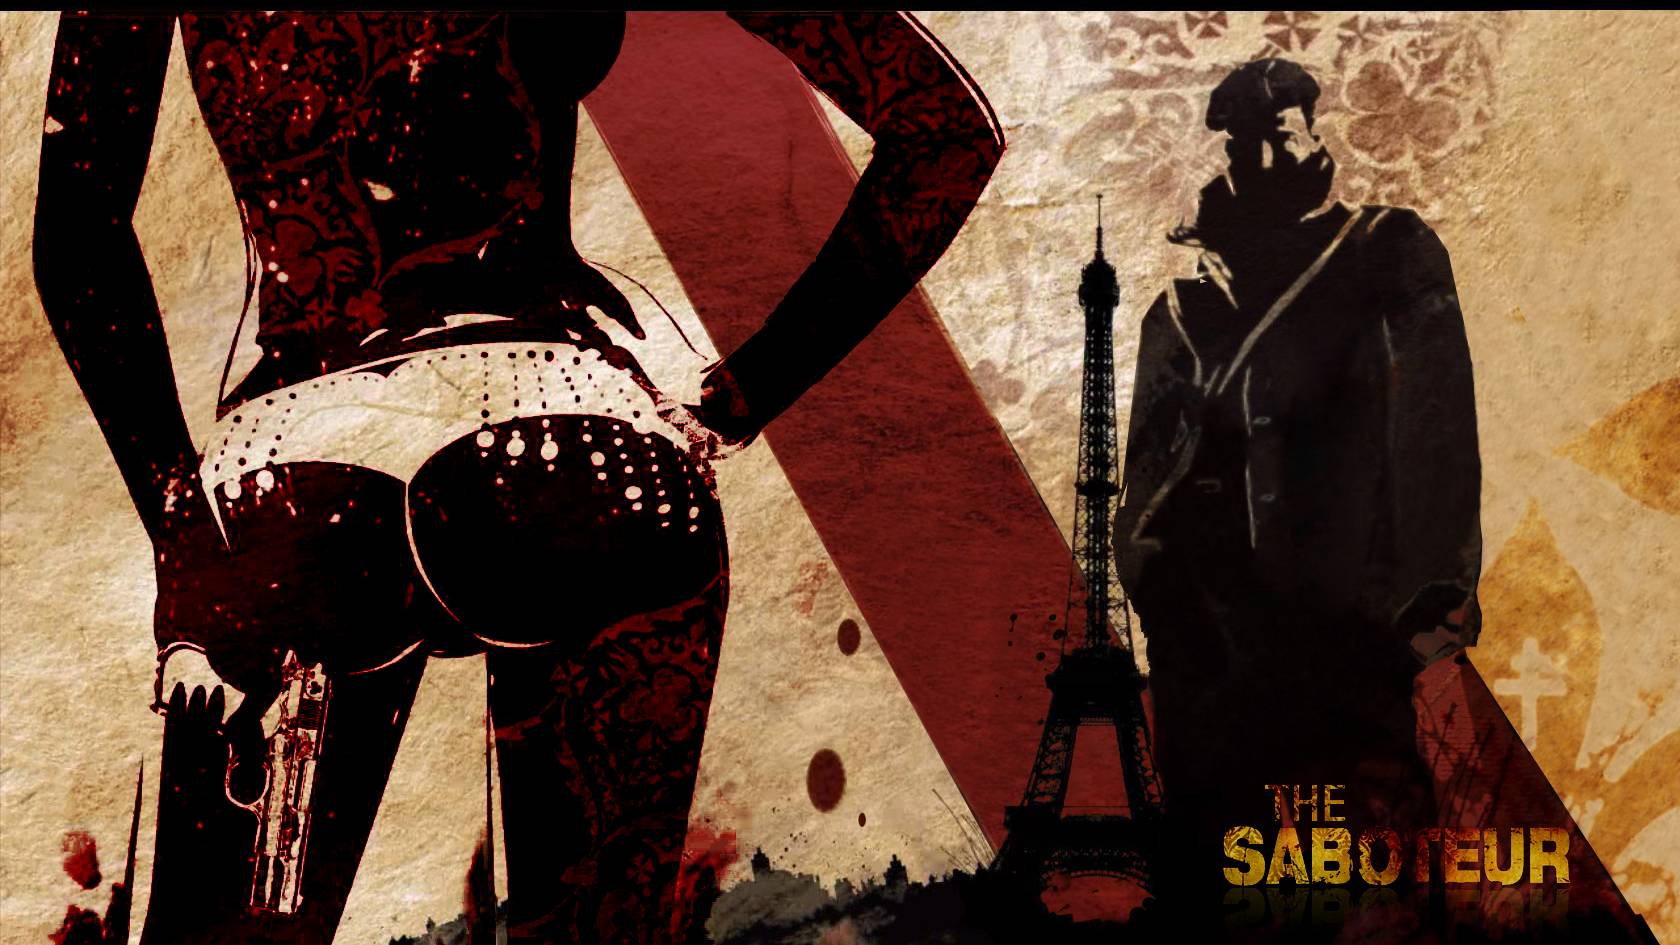 [СТРИМ] Проникаем в тыл врага: Прямая трансляция The Saboteur  ™ (2009) с участием KULIKOV PLAY.